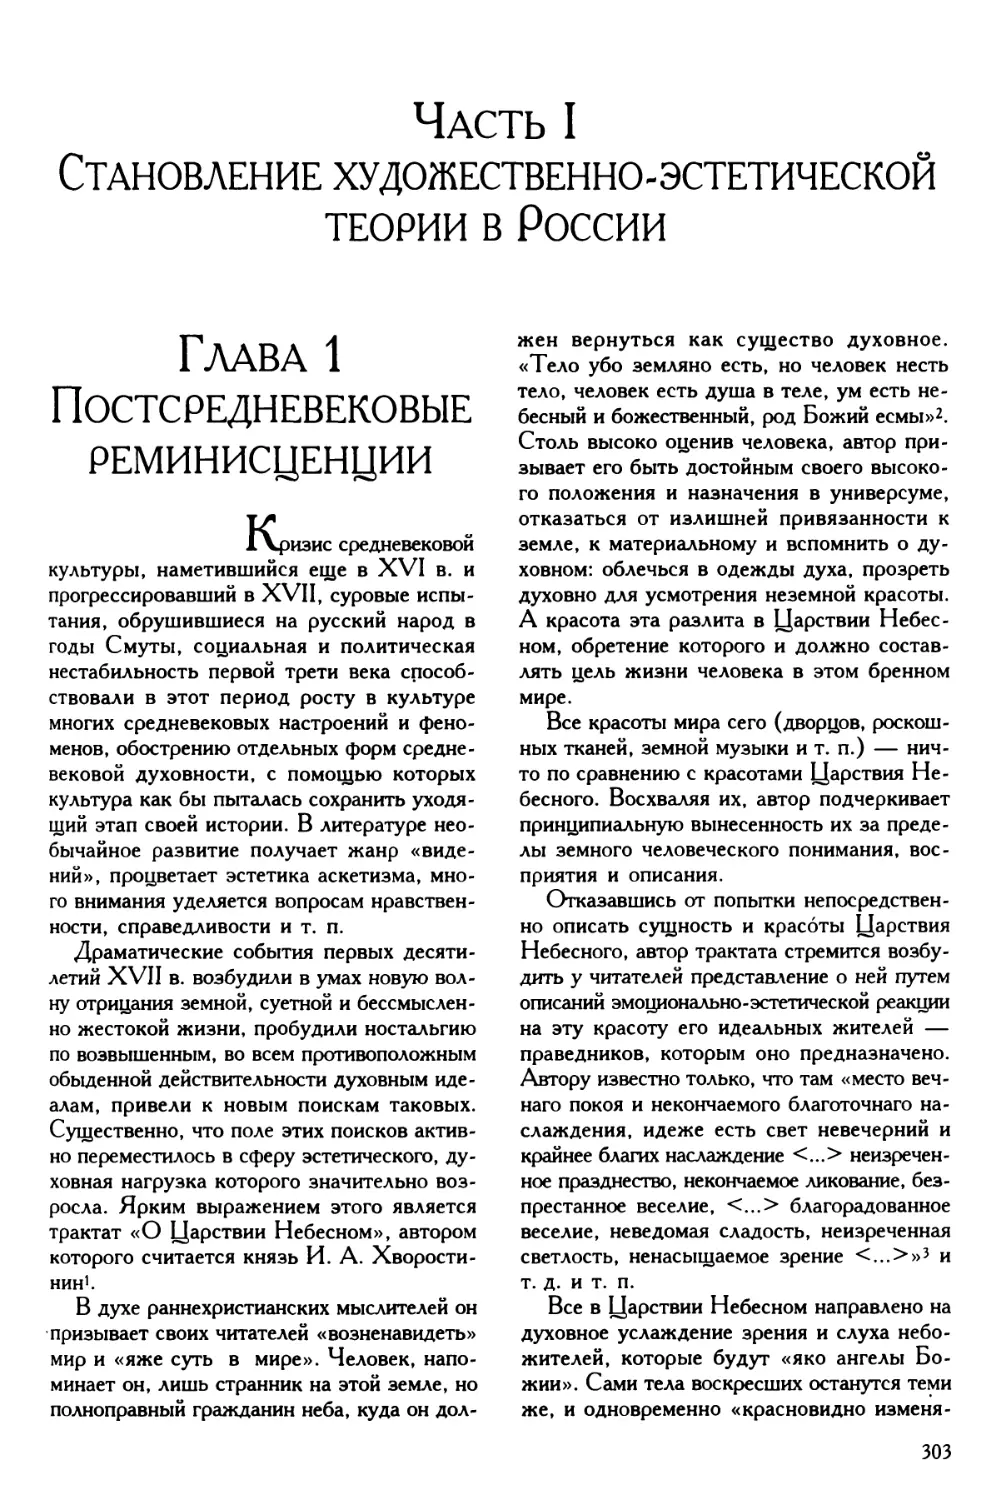 Часть I. Становление художественно-эстетической теории в России
Глава 1. Постсредневековые реминисценции